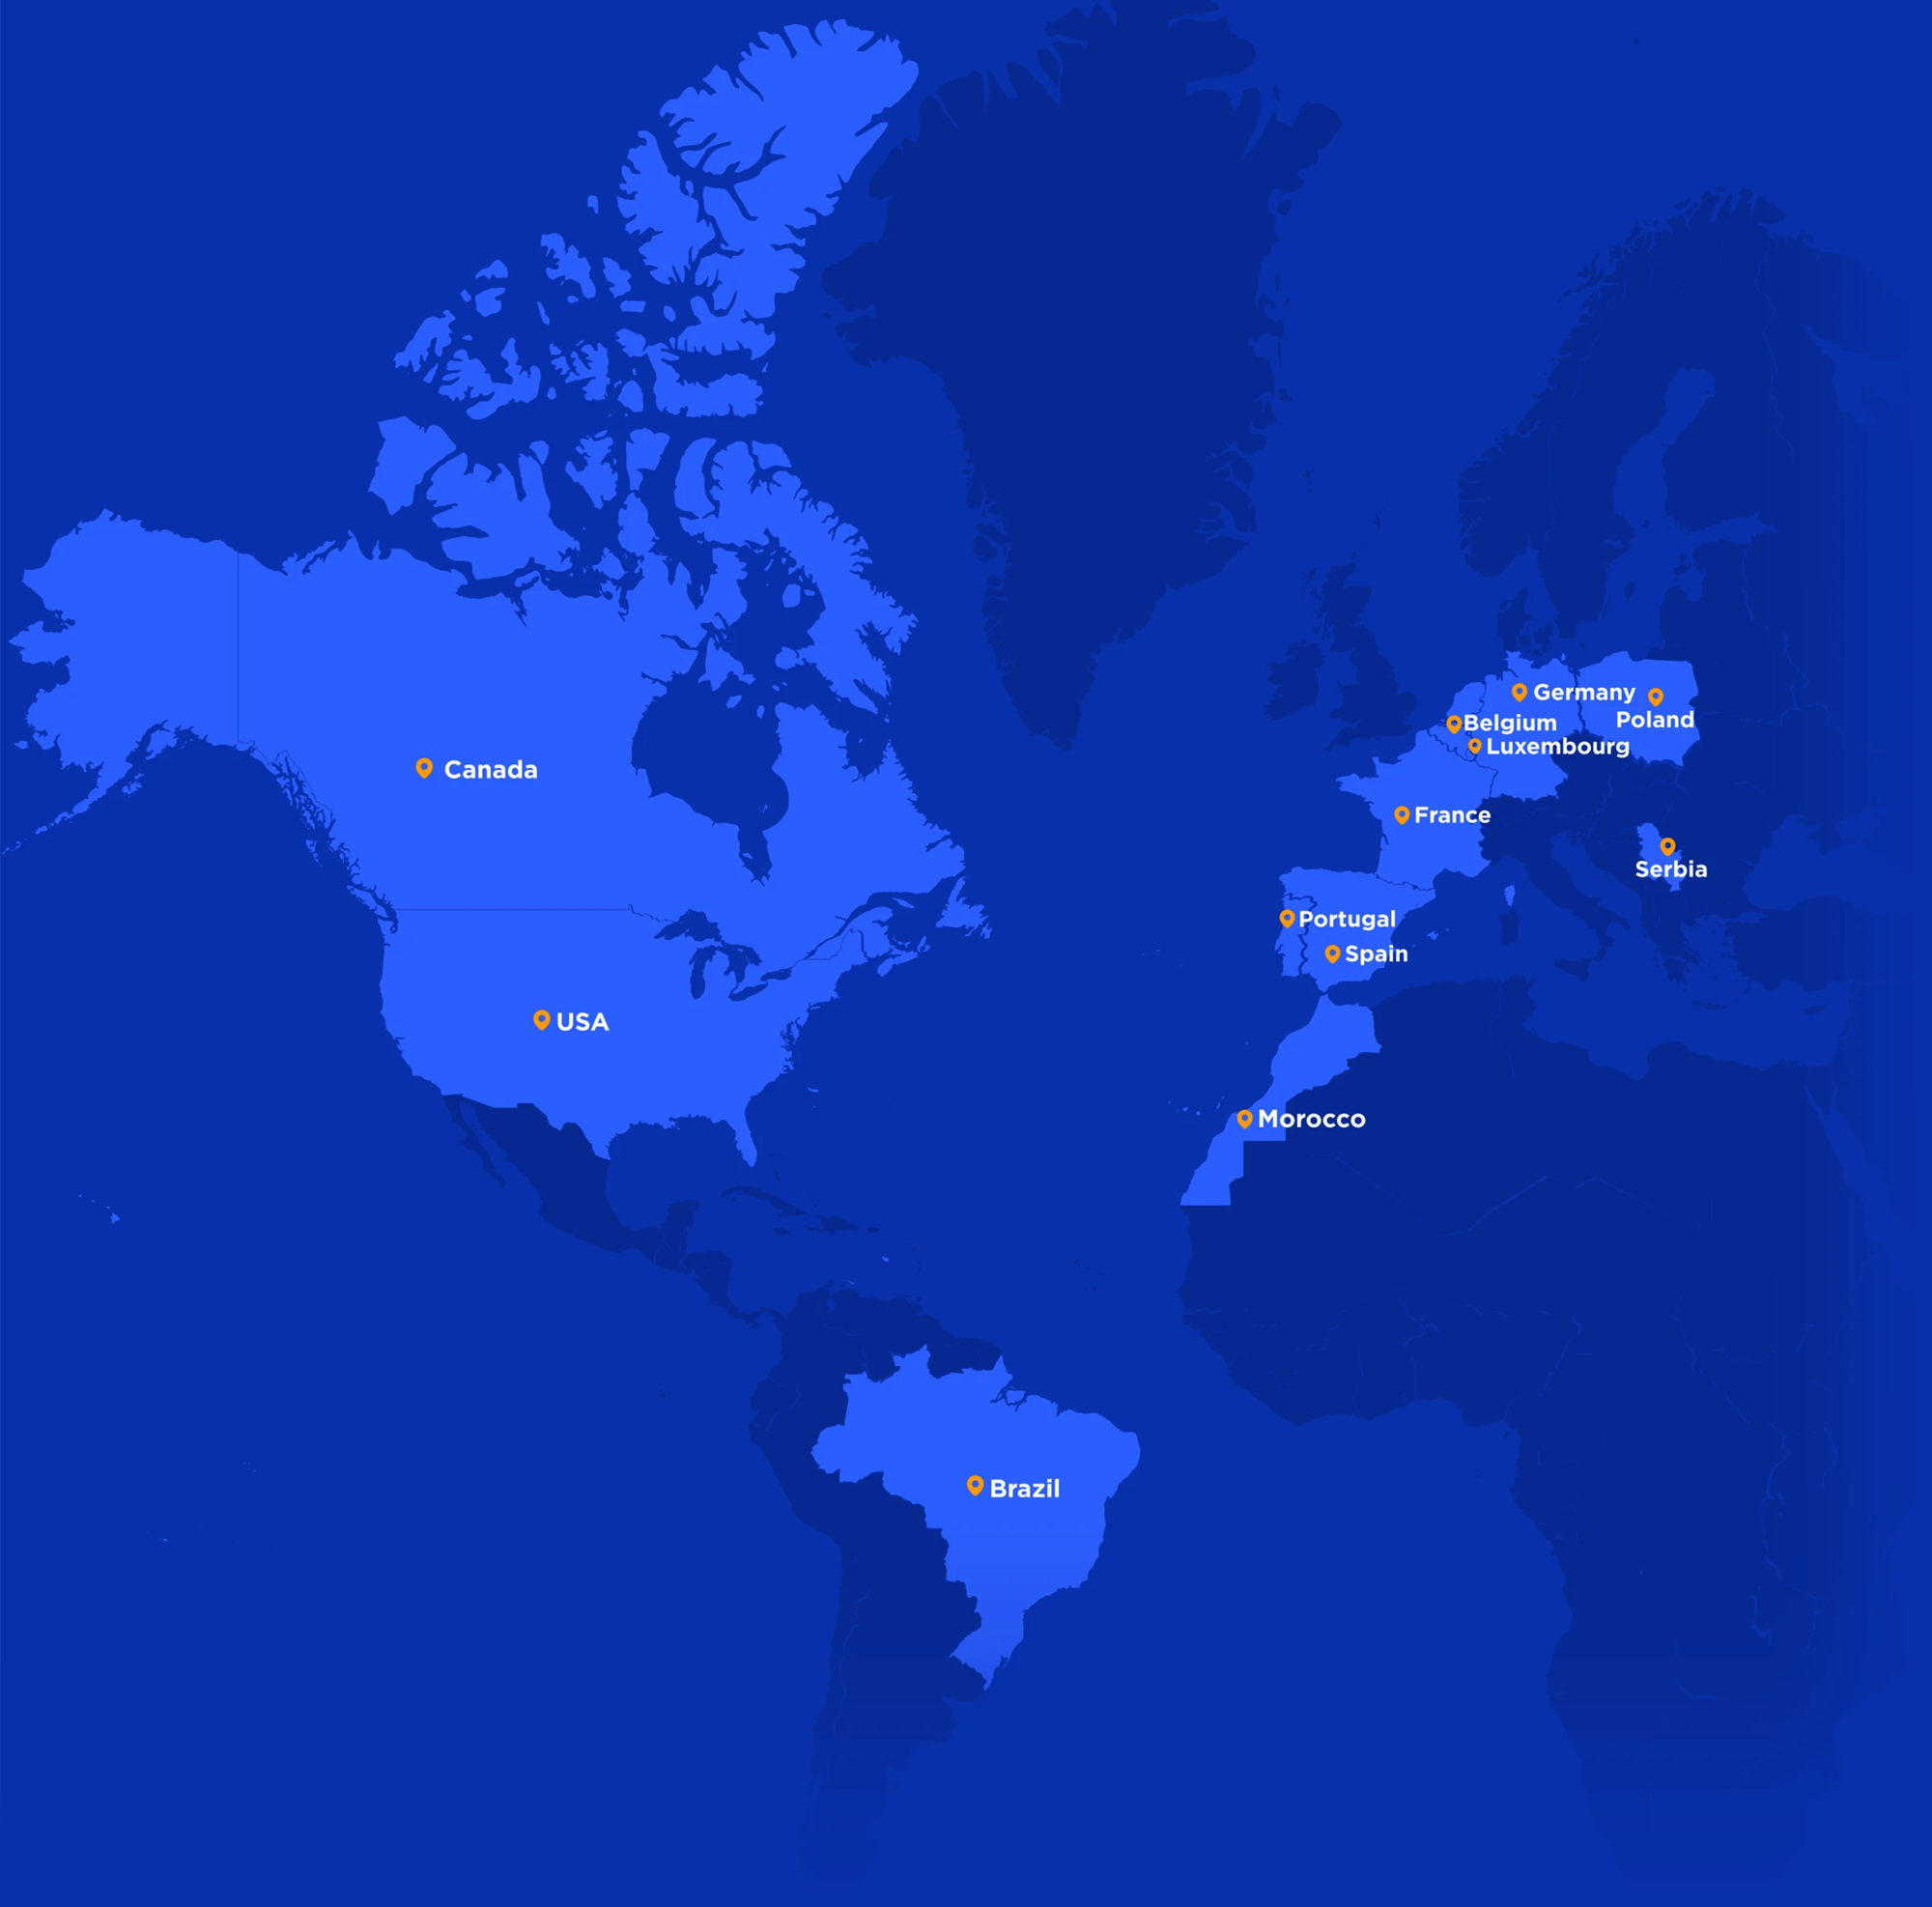 Mapa mundial com destaque para os países onde a Alter Solutions está presente